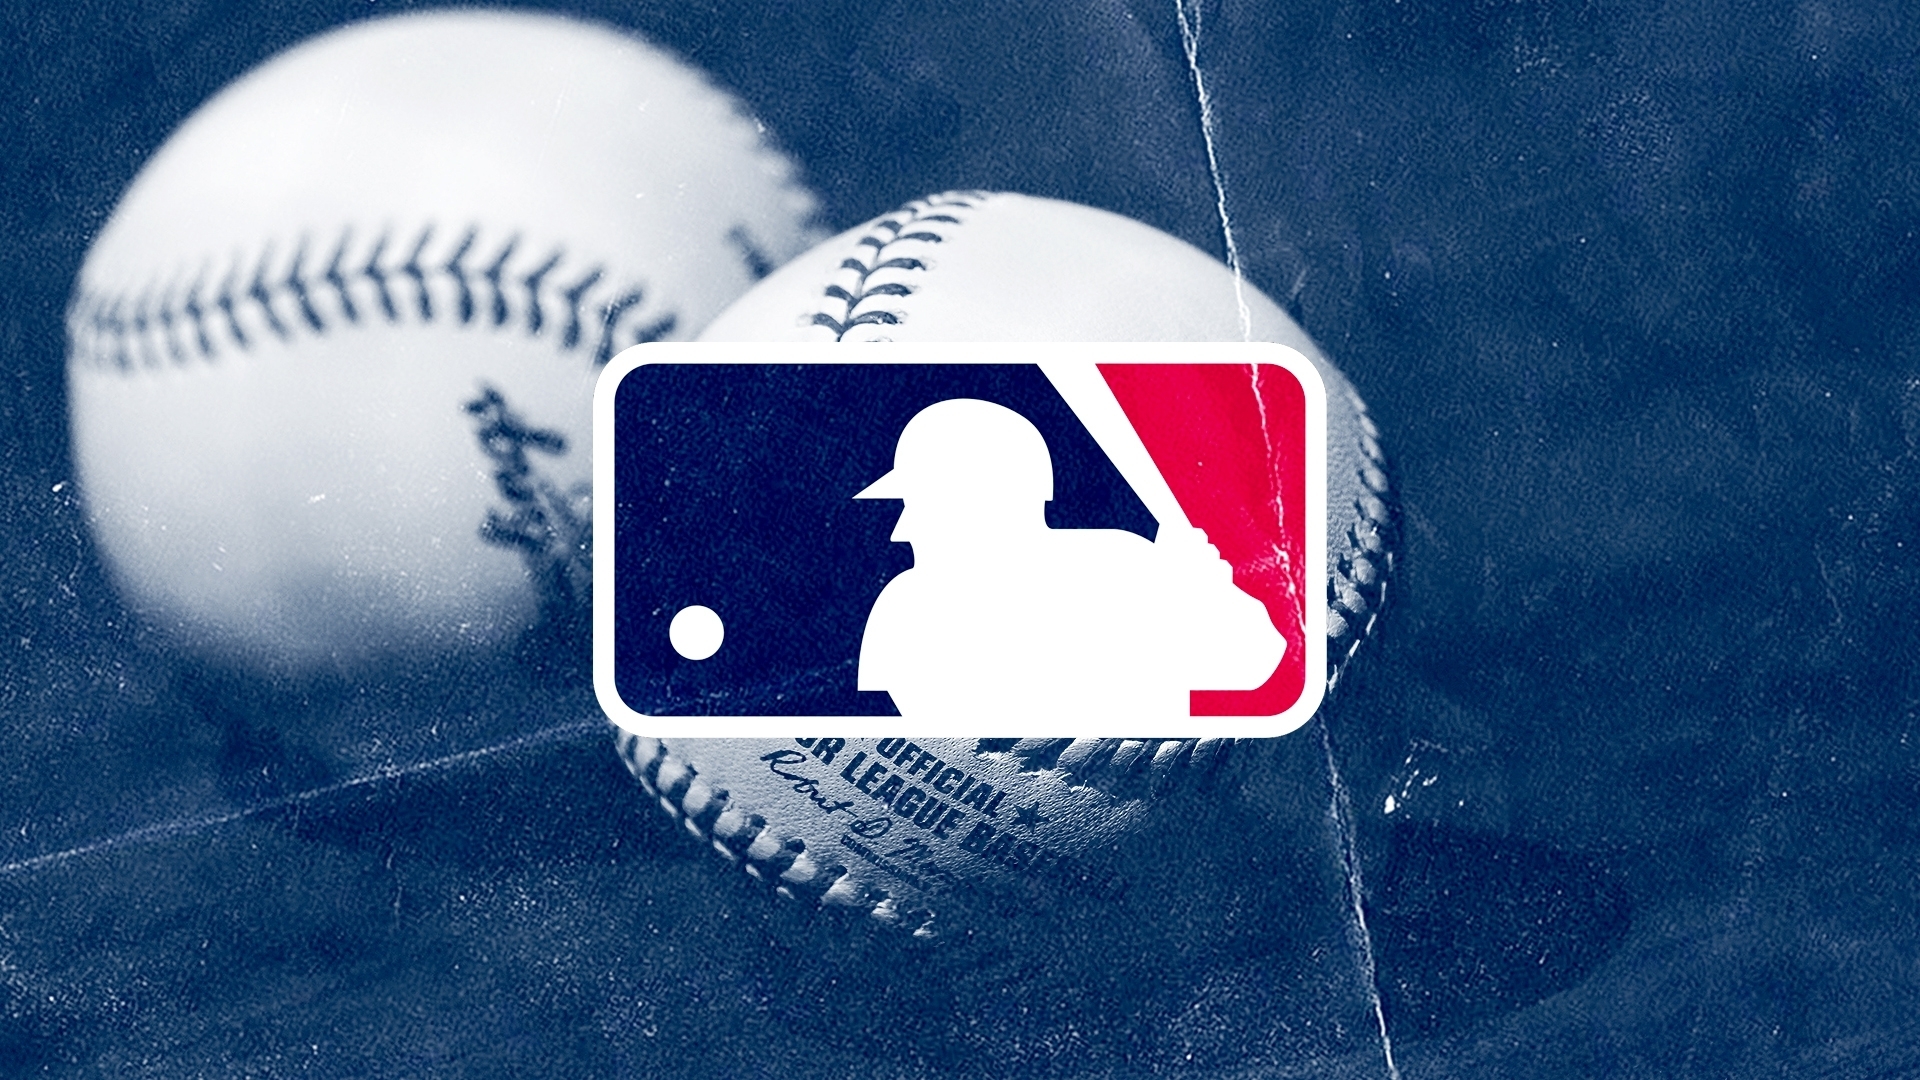 Baseball experimental rules: Louisville Bats, Triple-A use bigger bases